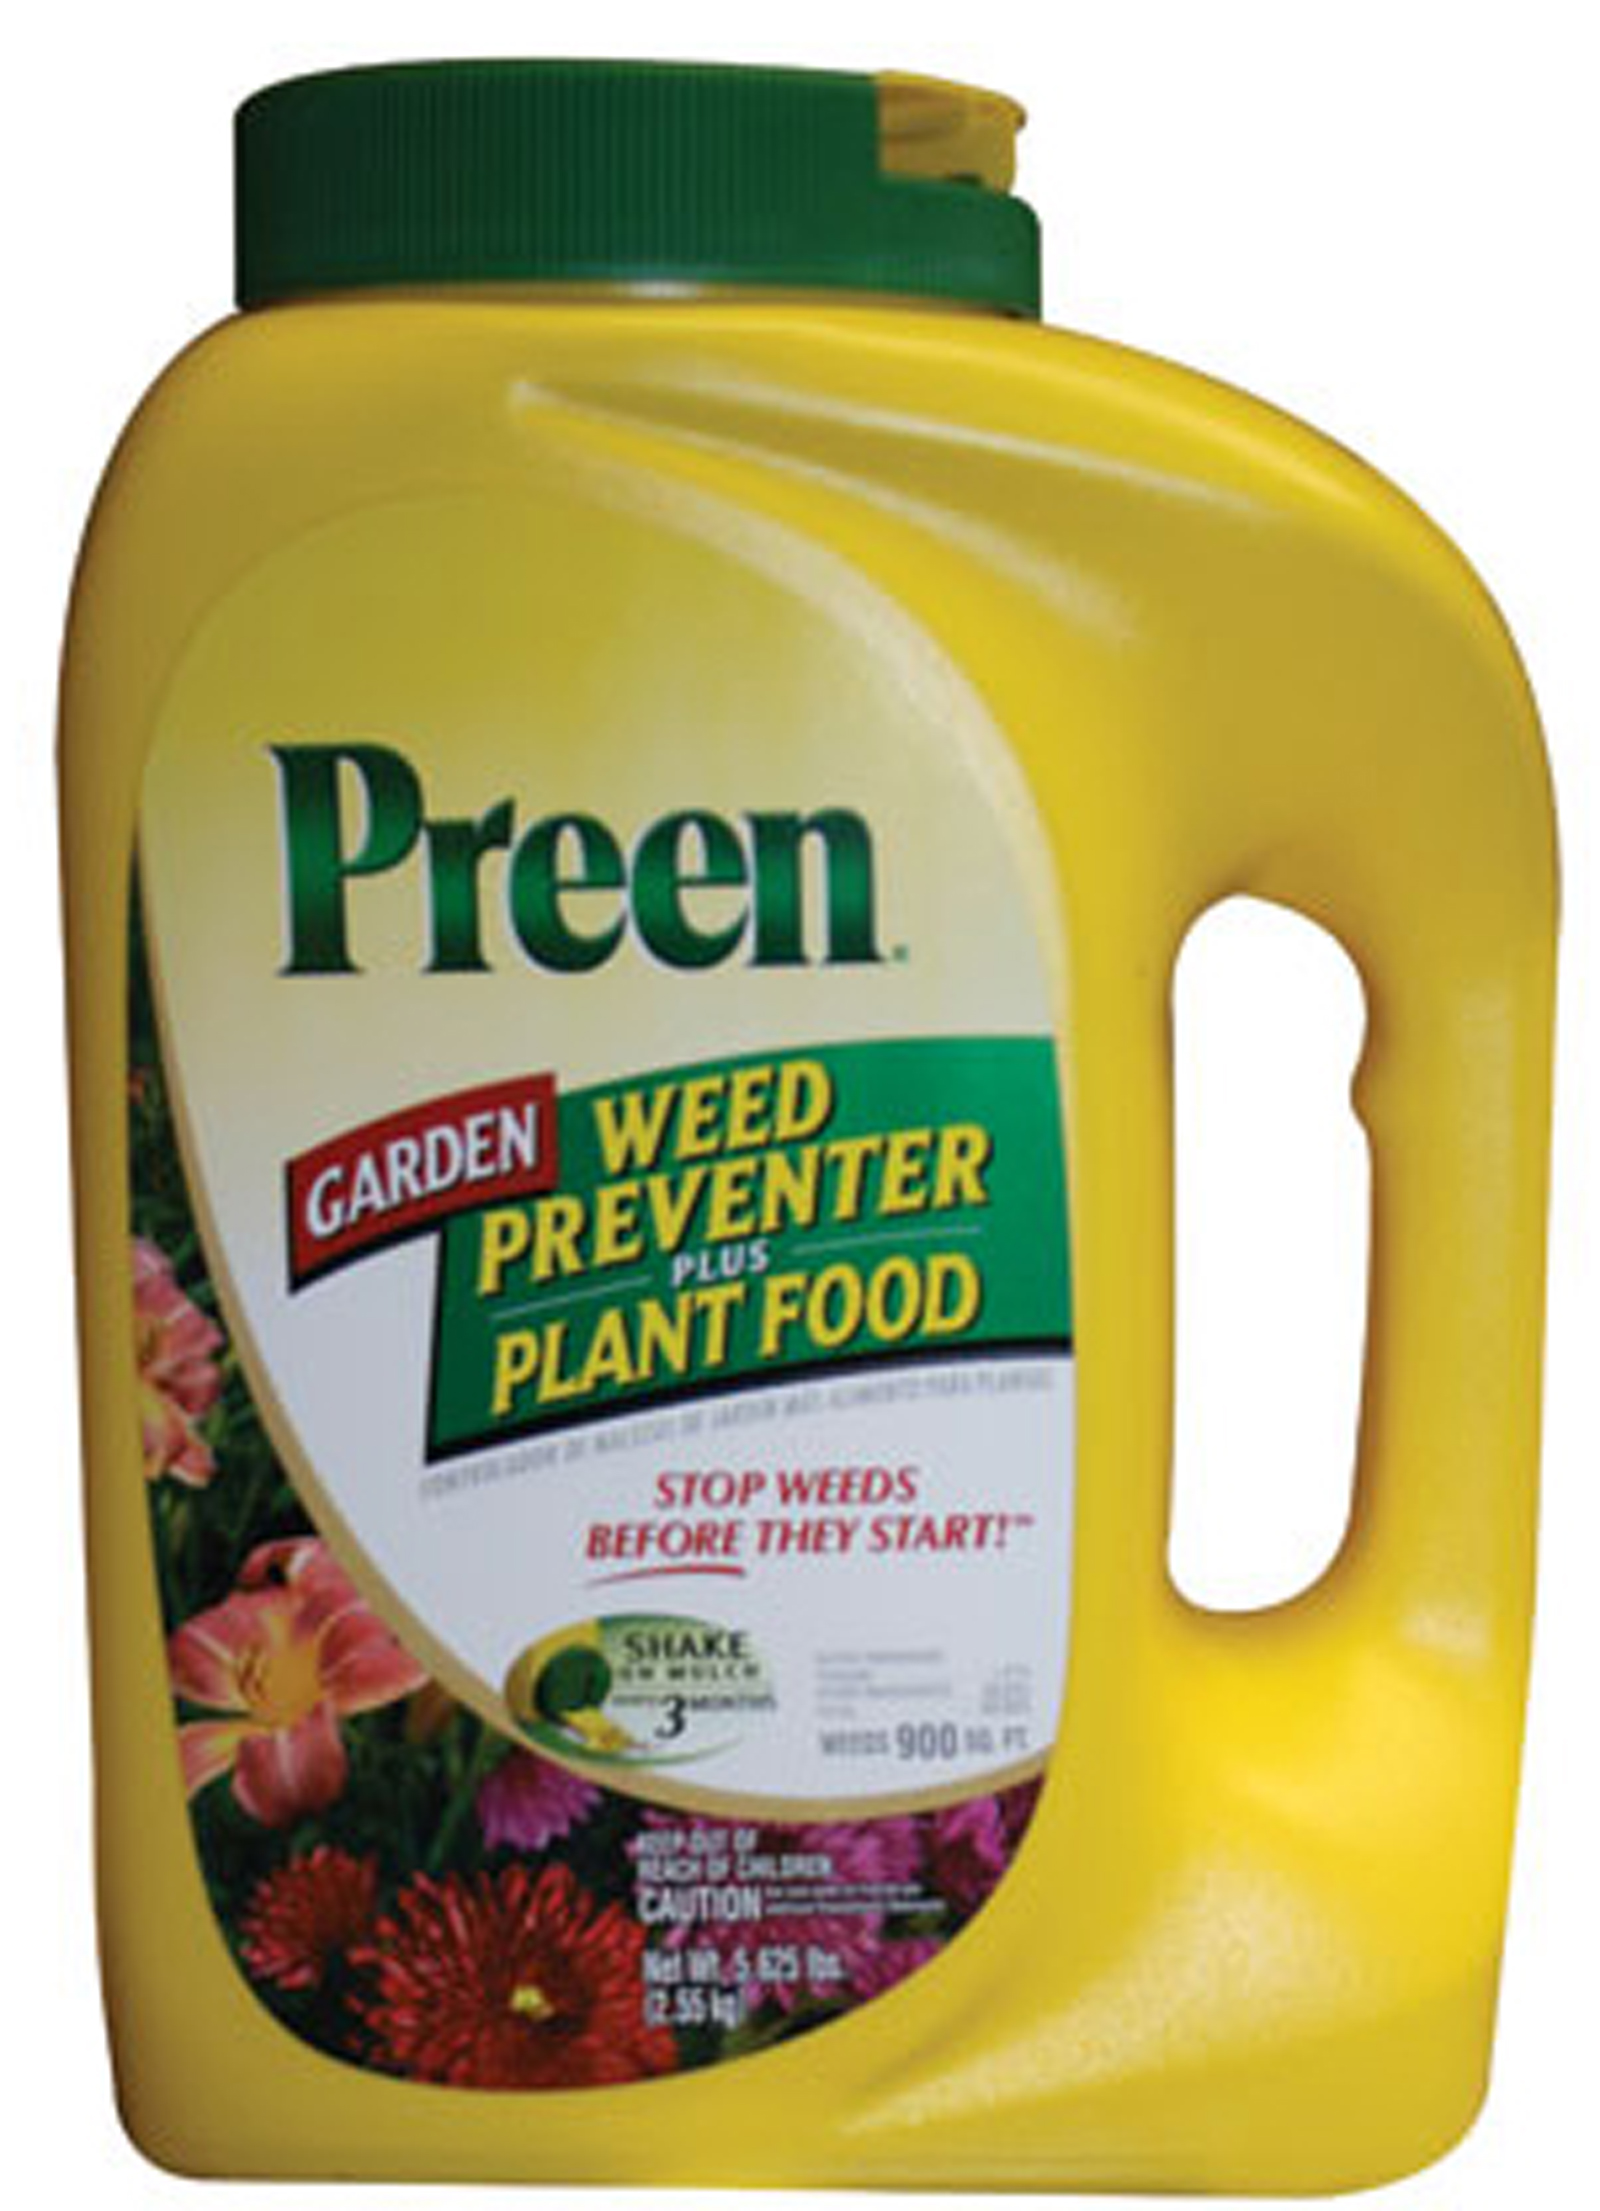 lebanon-seaboard-preen-g81-2163902x-preen-garden-weed-preventer-plus